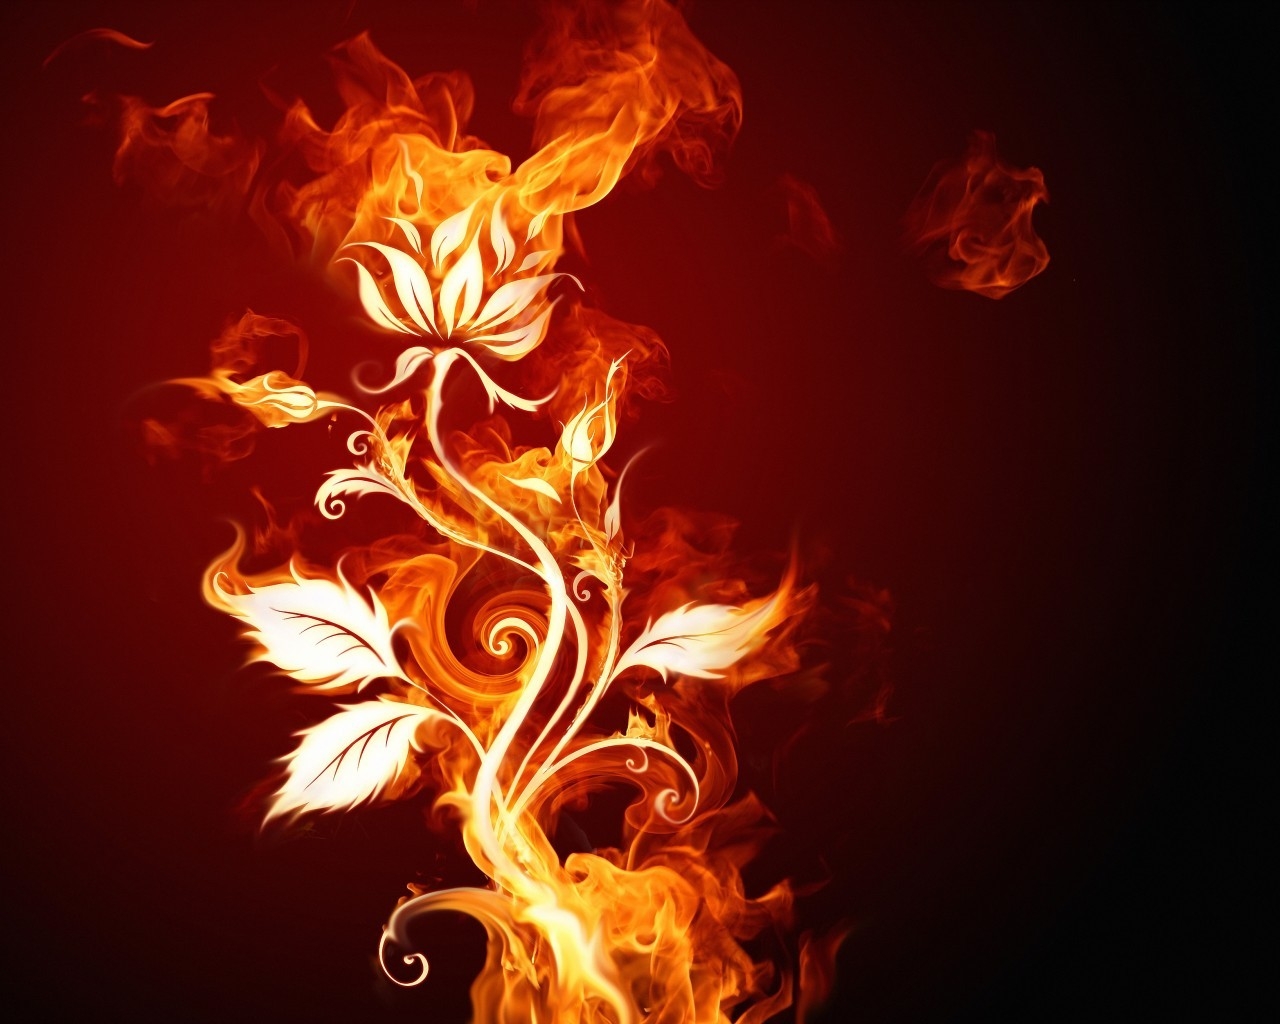 Burning Flower for 1280 x 1024 resolution